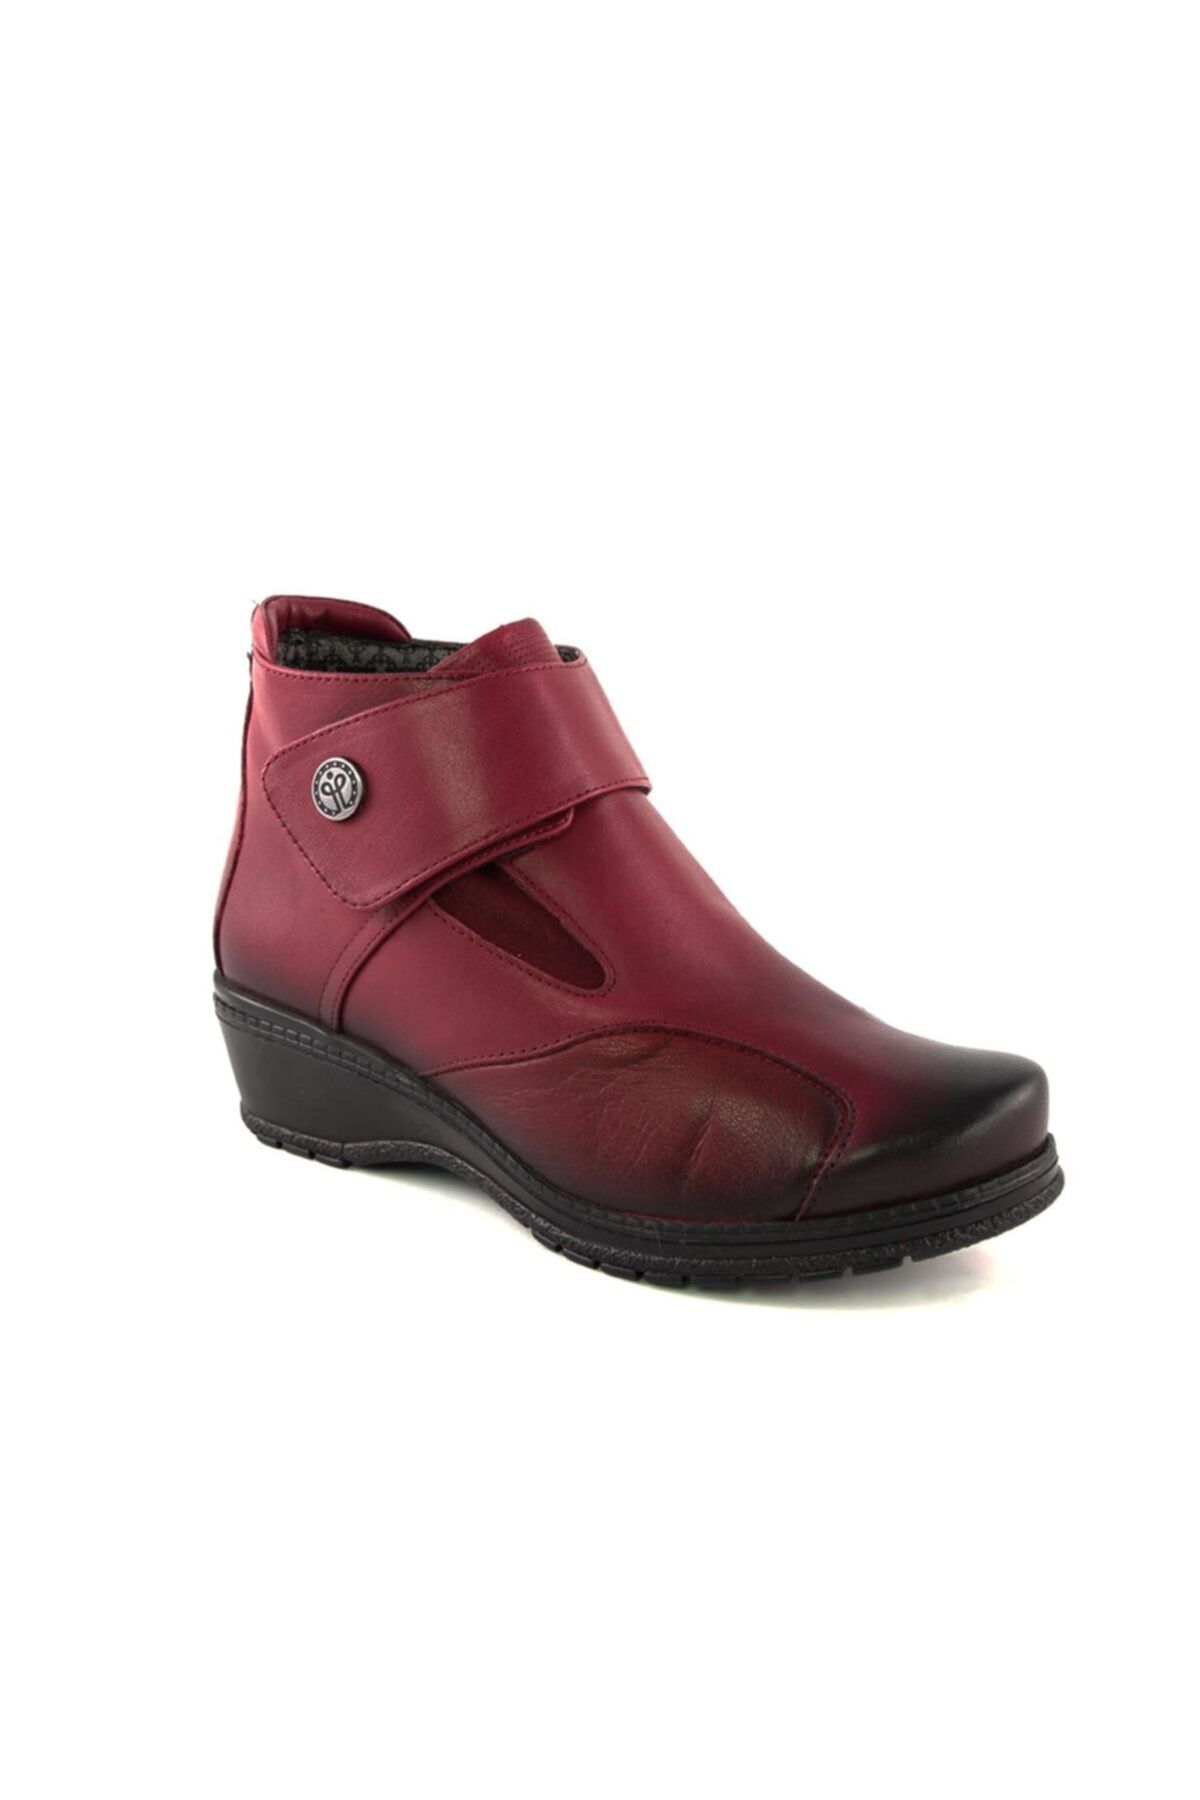 Forelli Vıonıc-k Klasik Kadın Bot Ayakkabı Bordo